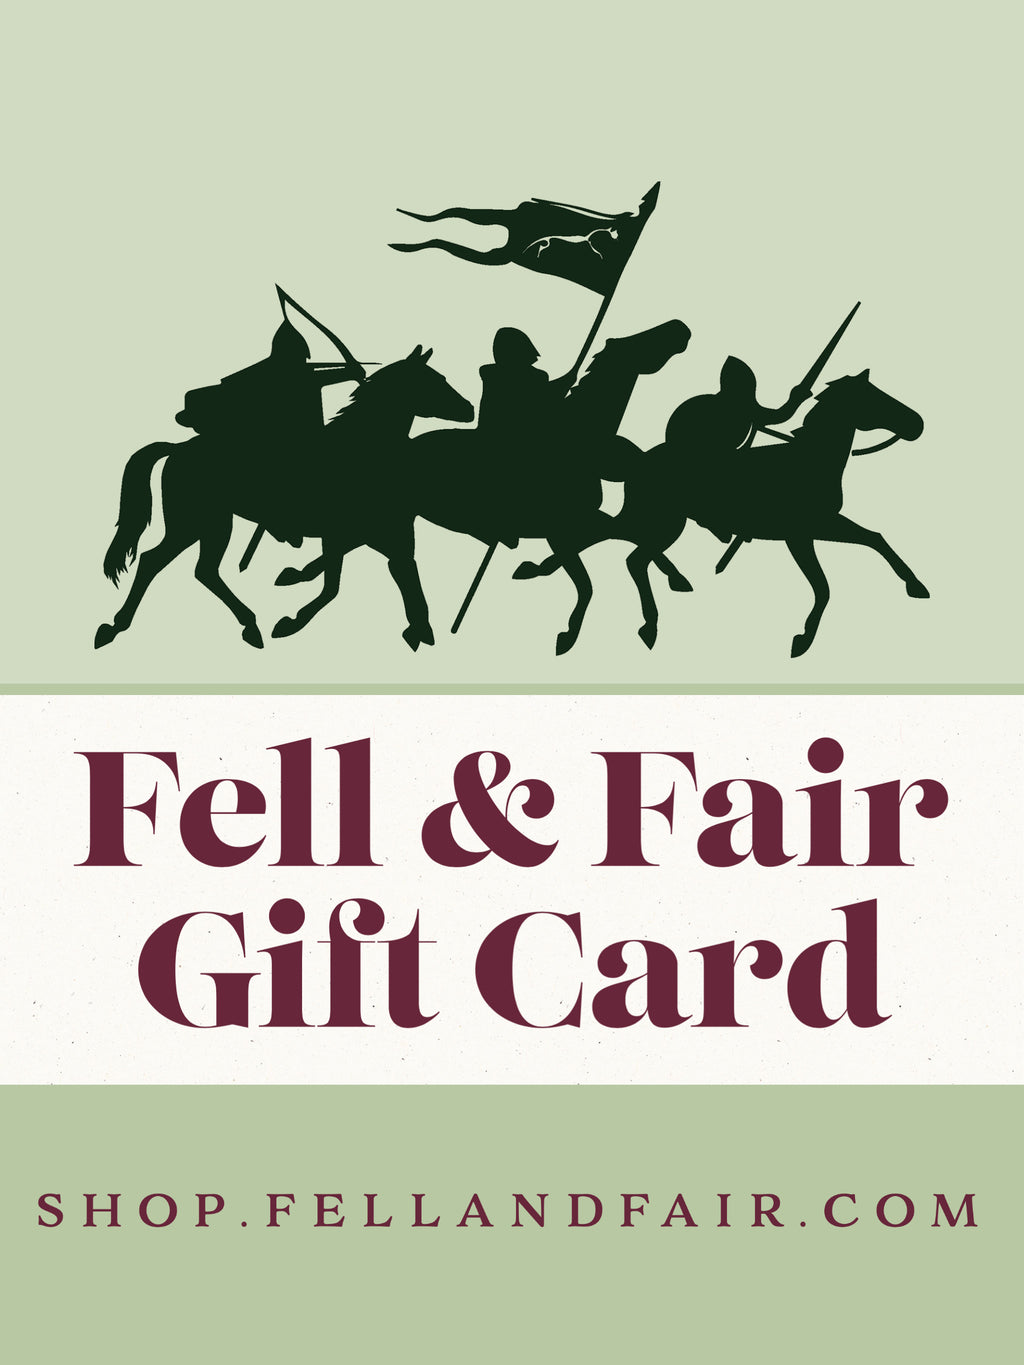 Fell & Fair gift card